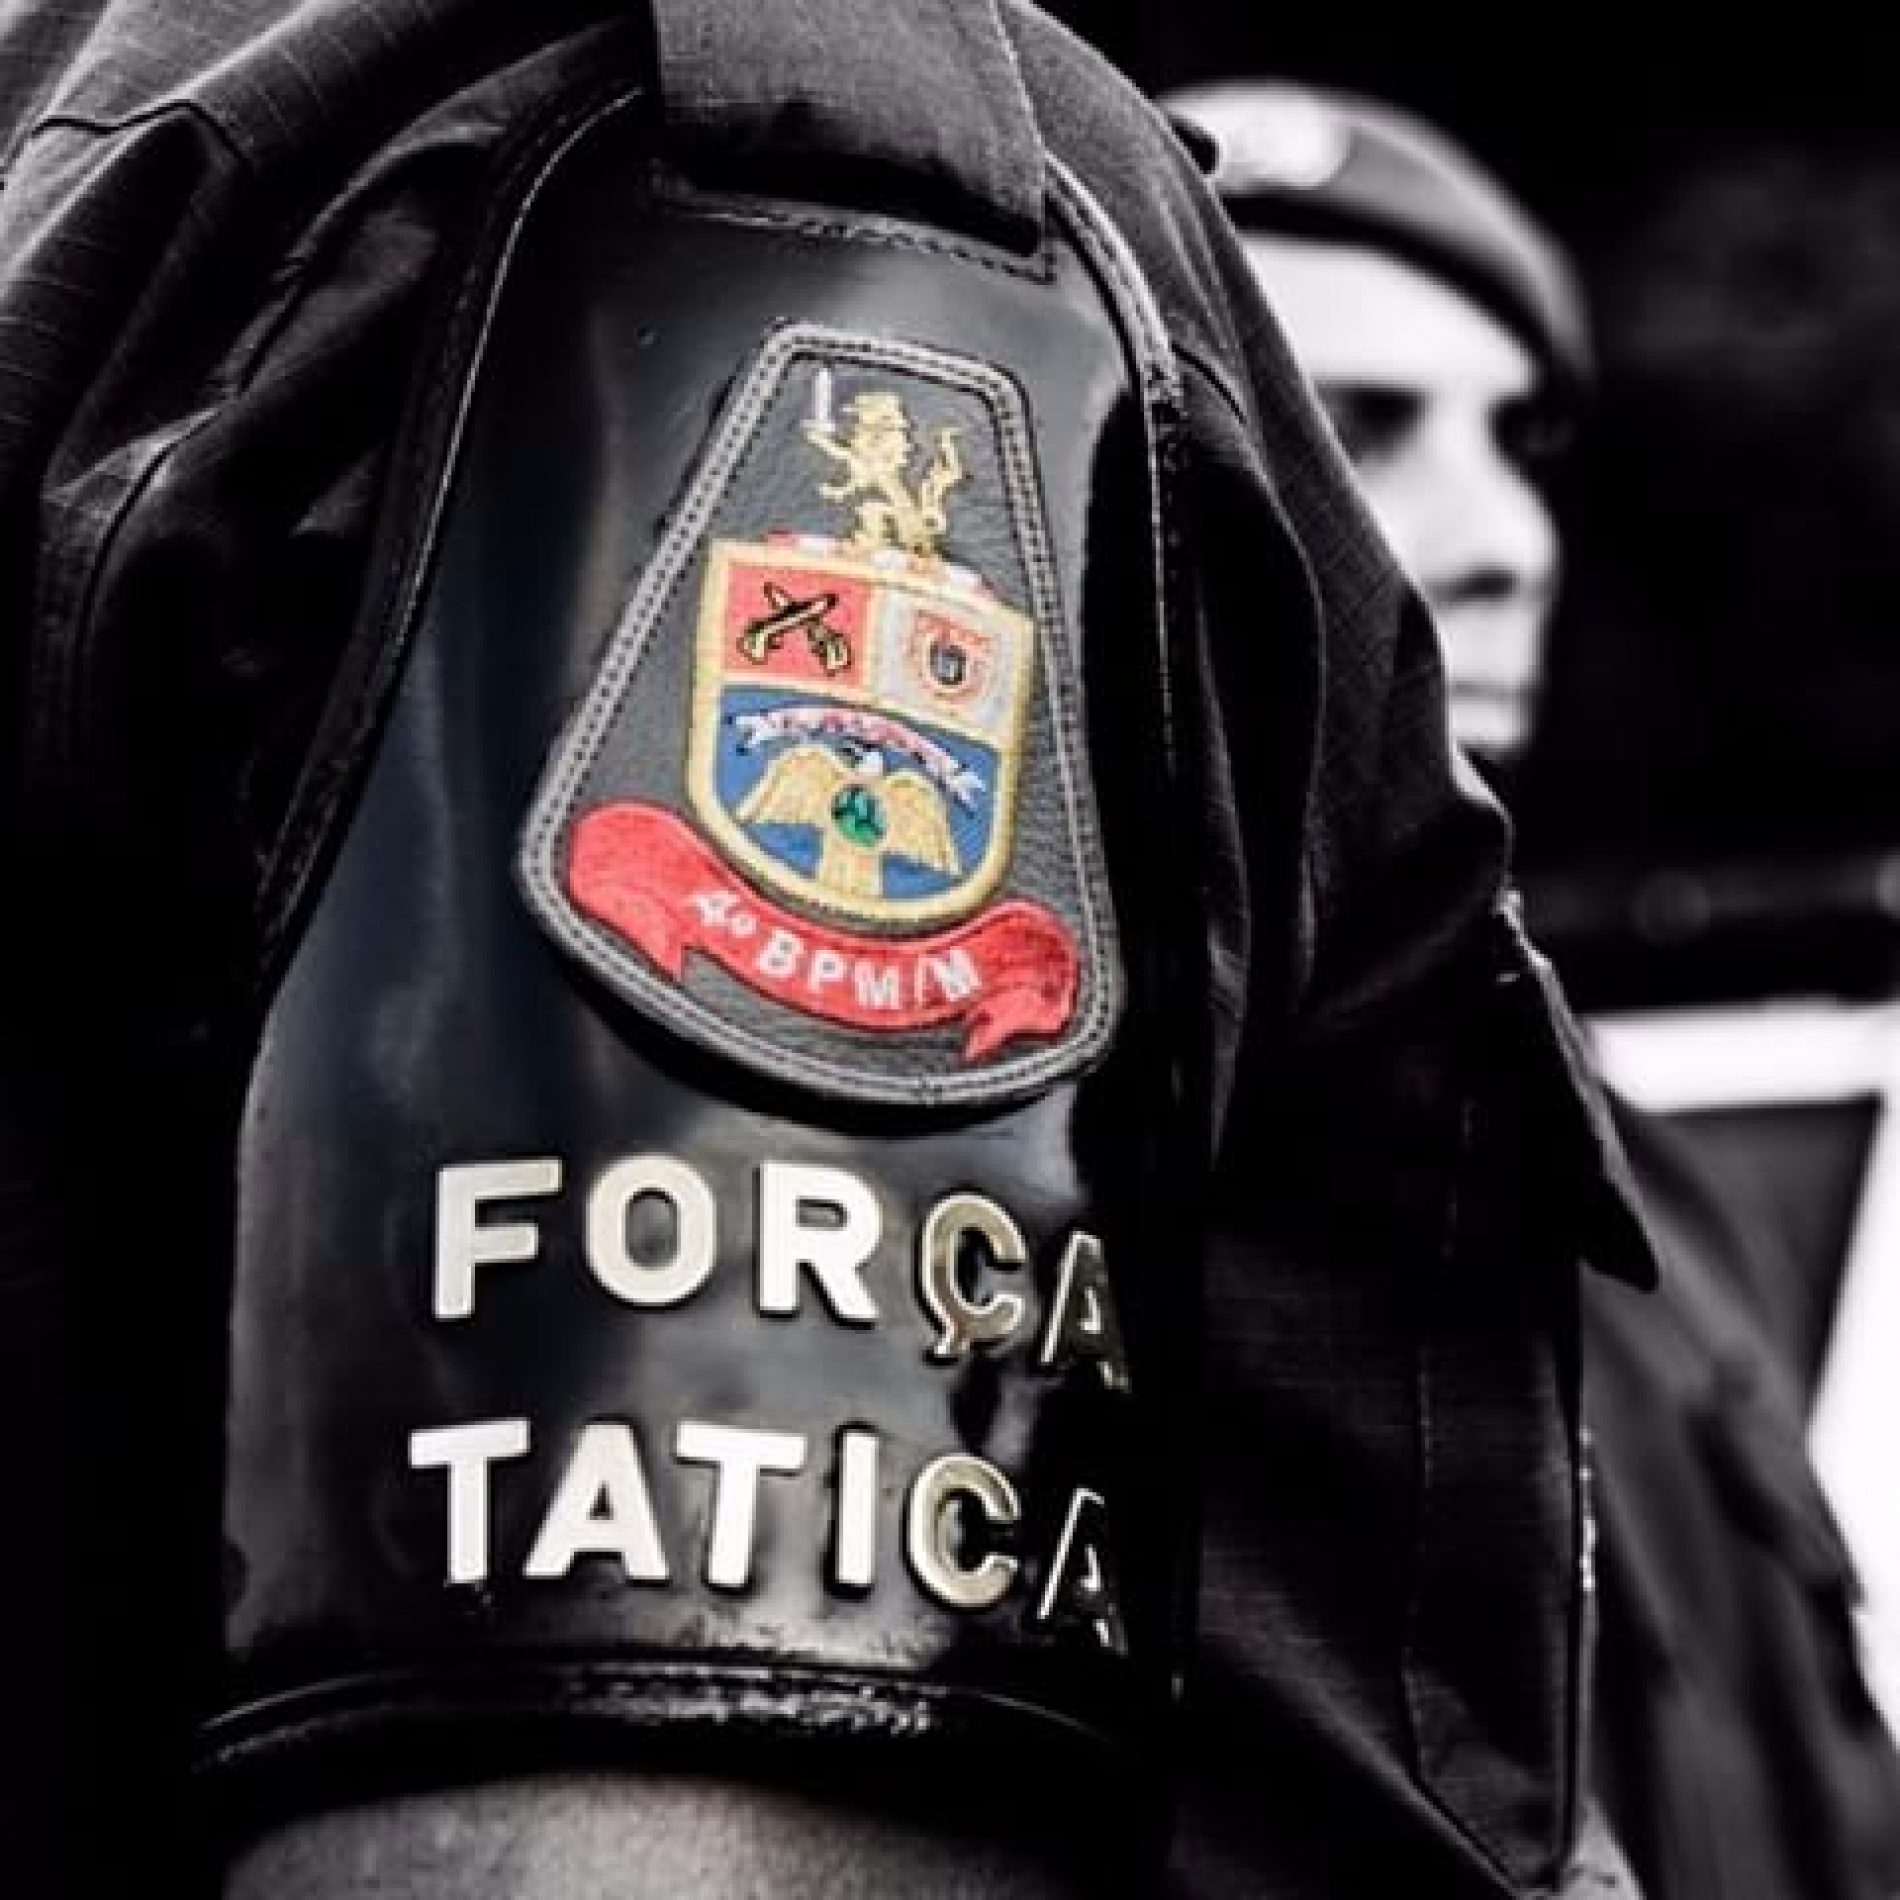 BARRETOS: Força Tática prende agente de segurança traficando drogas perto de escola infantil